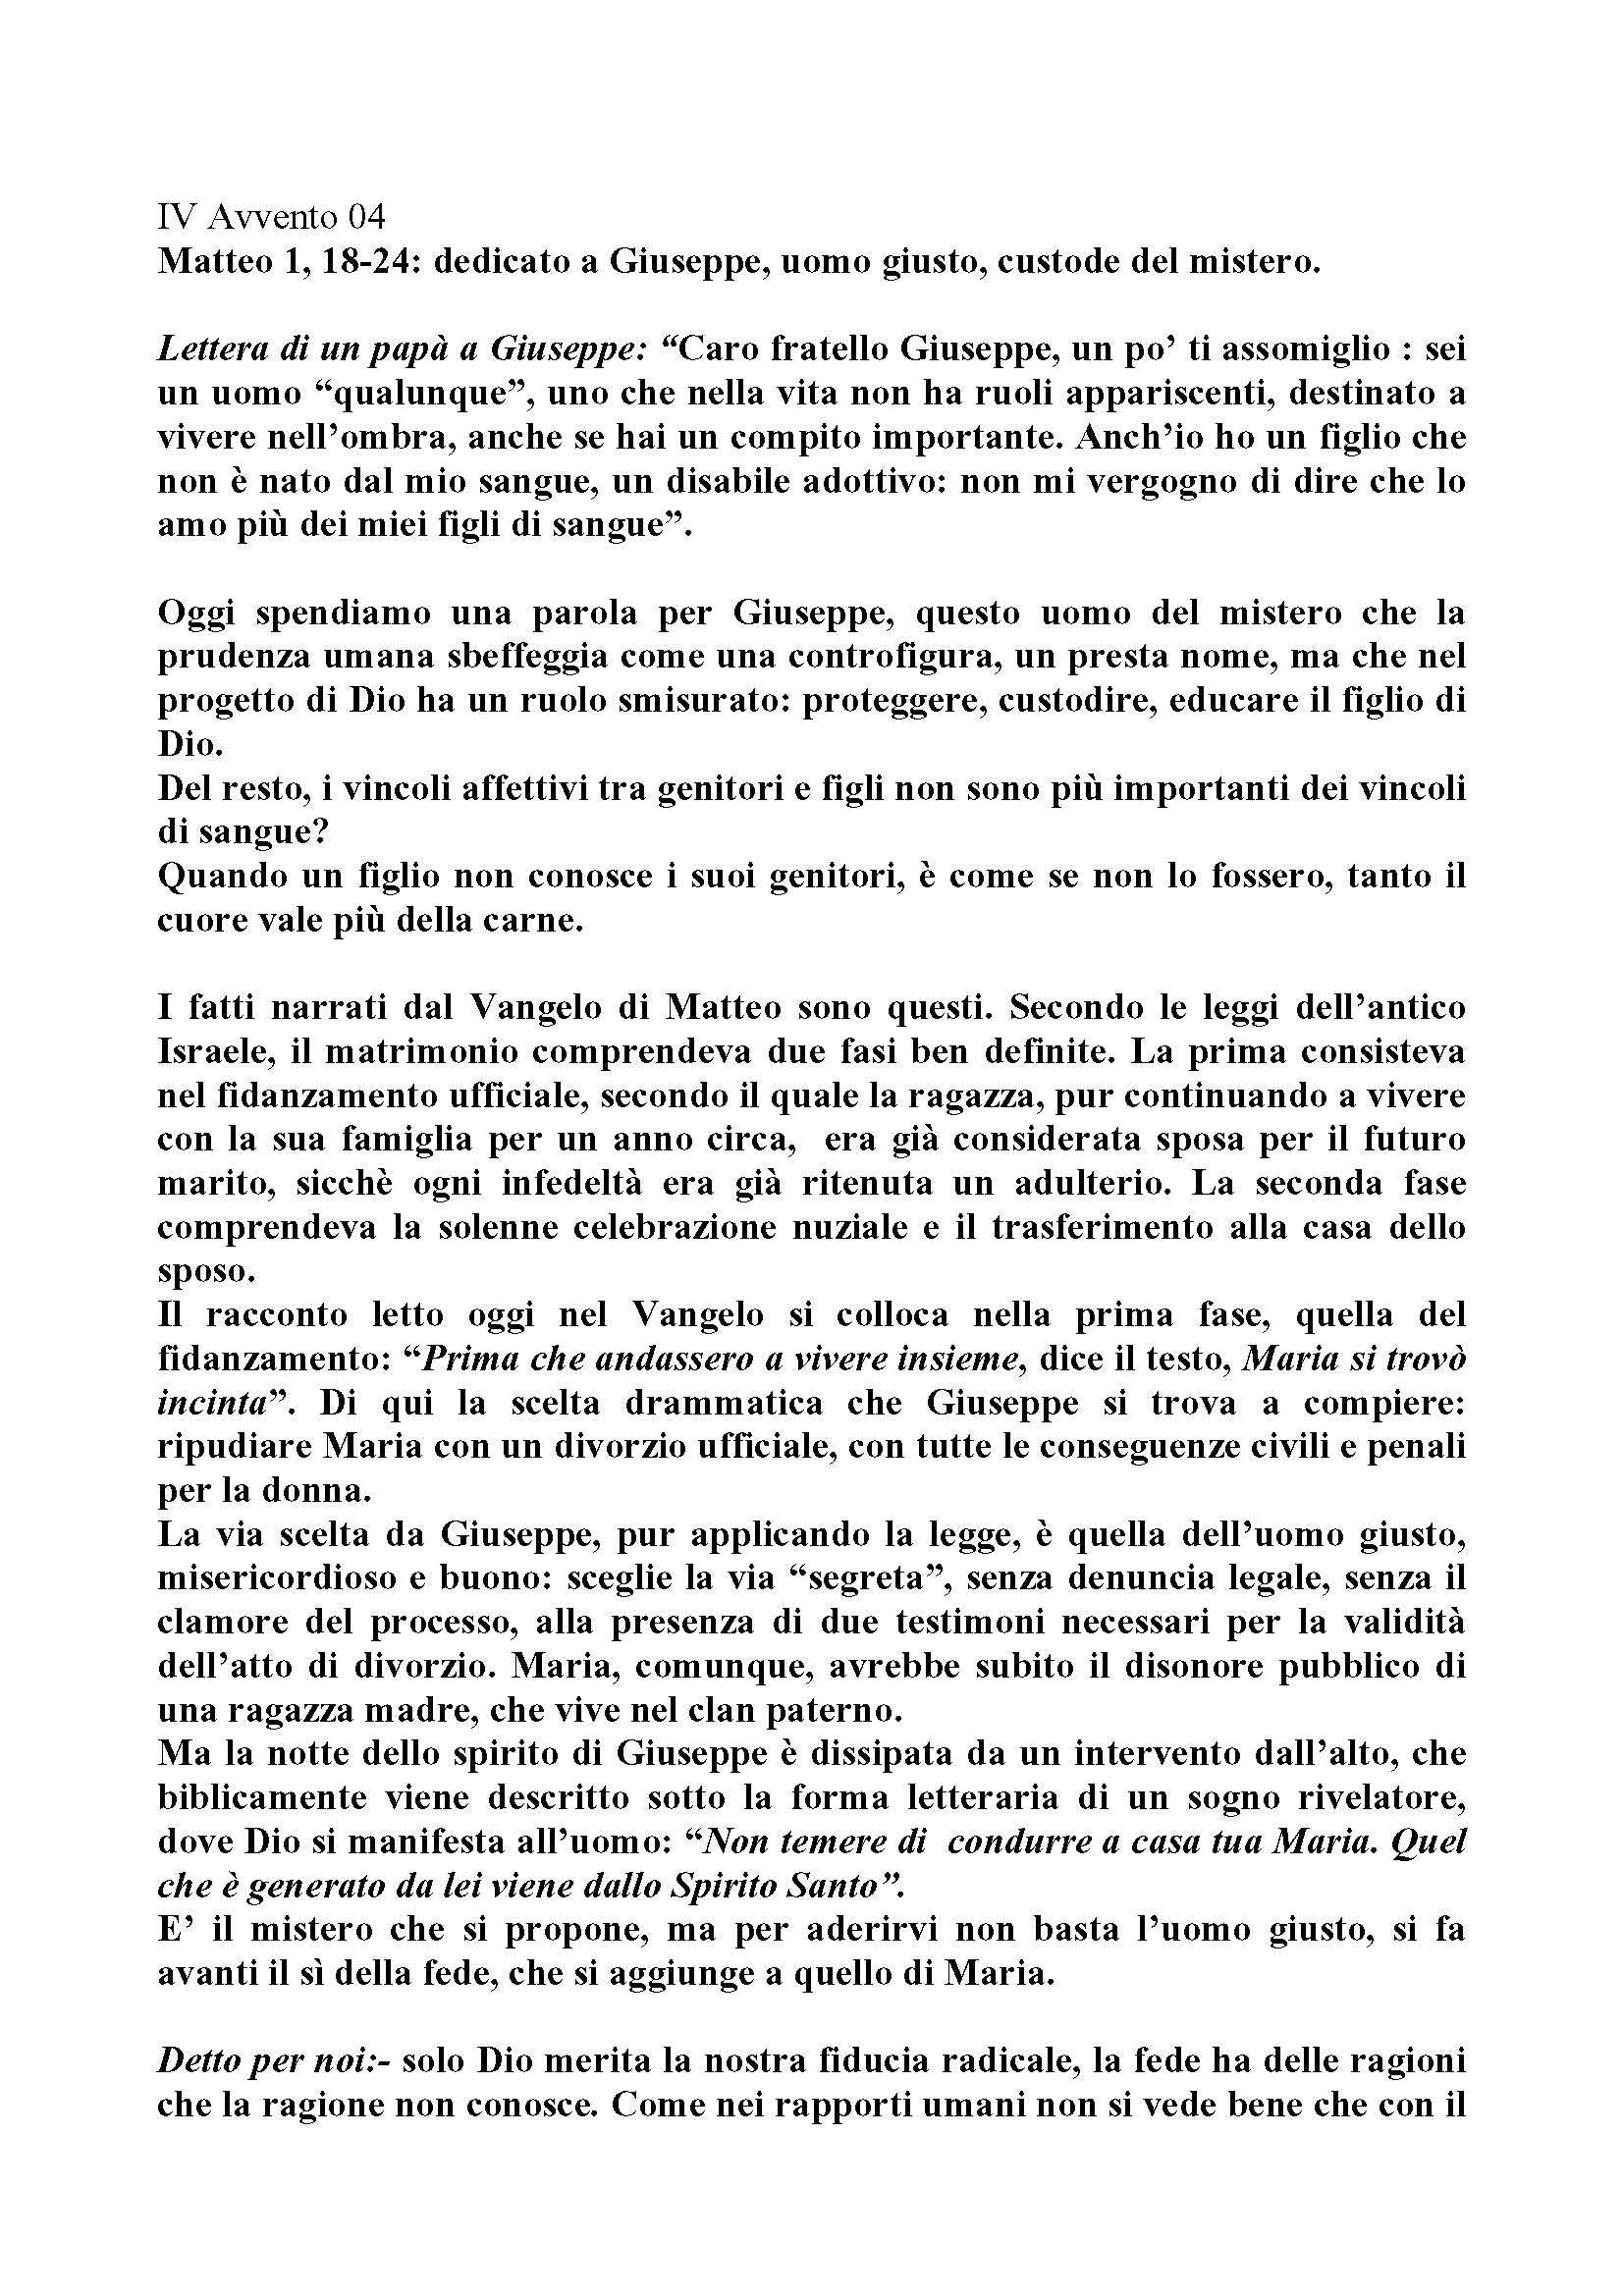 Avvento04_dedicato_a_Giuseppe_uomo_giusto_custode_del_mistero.pdf